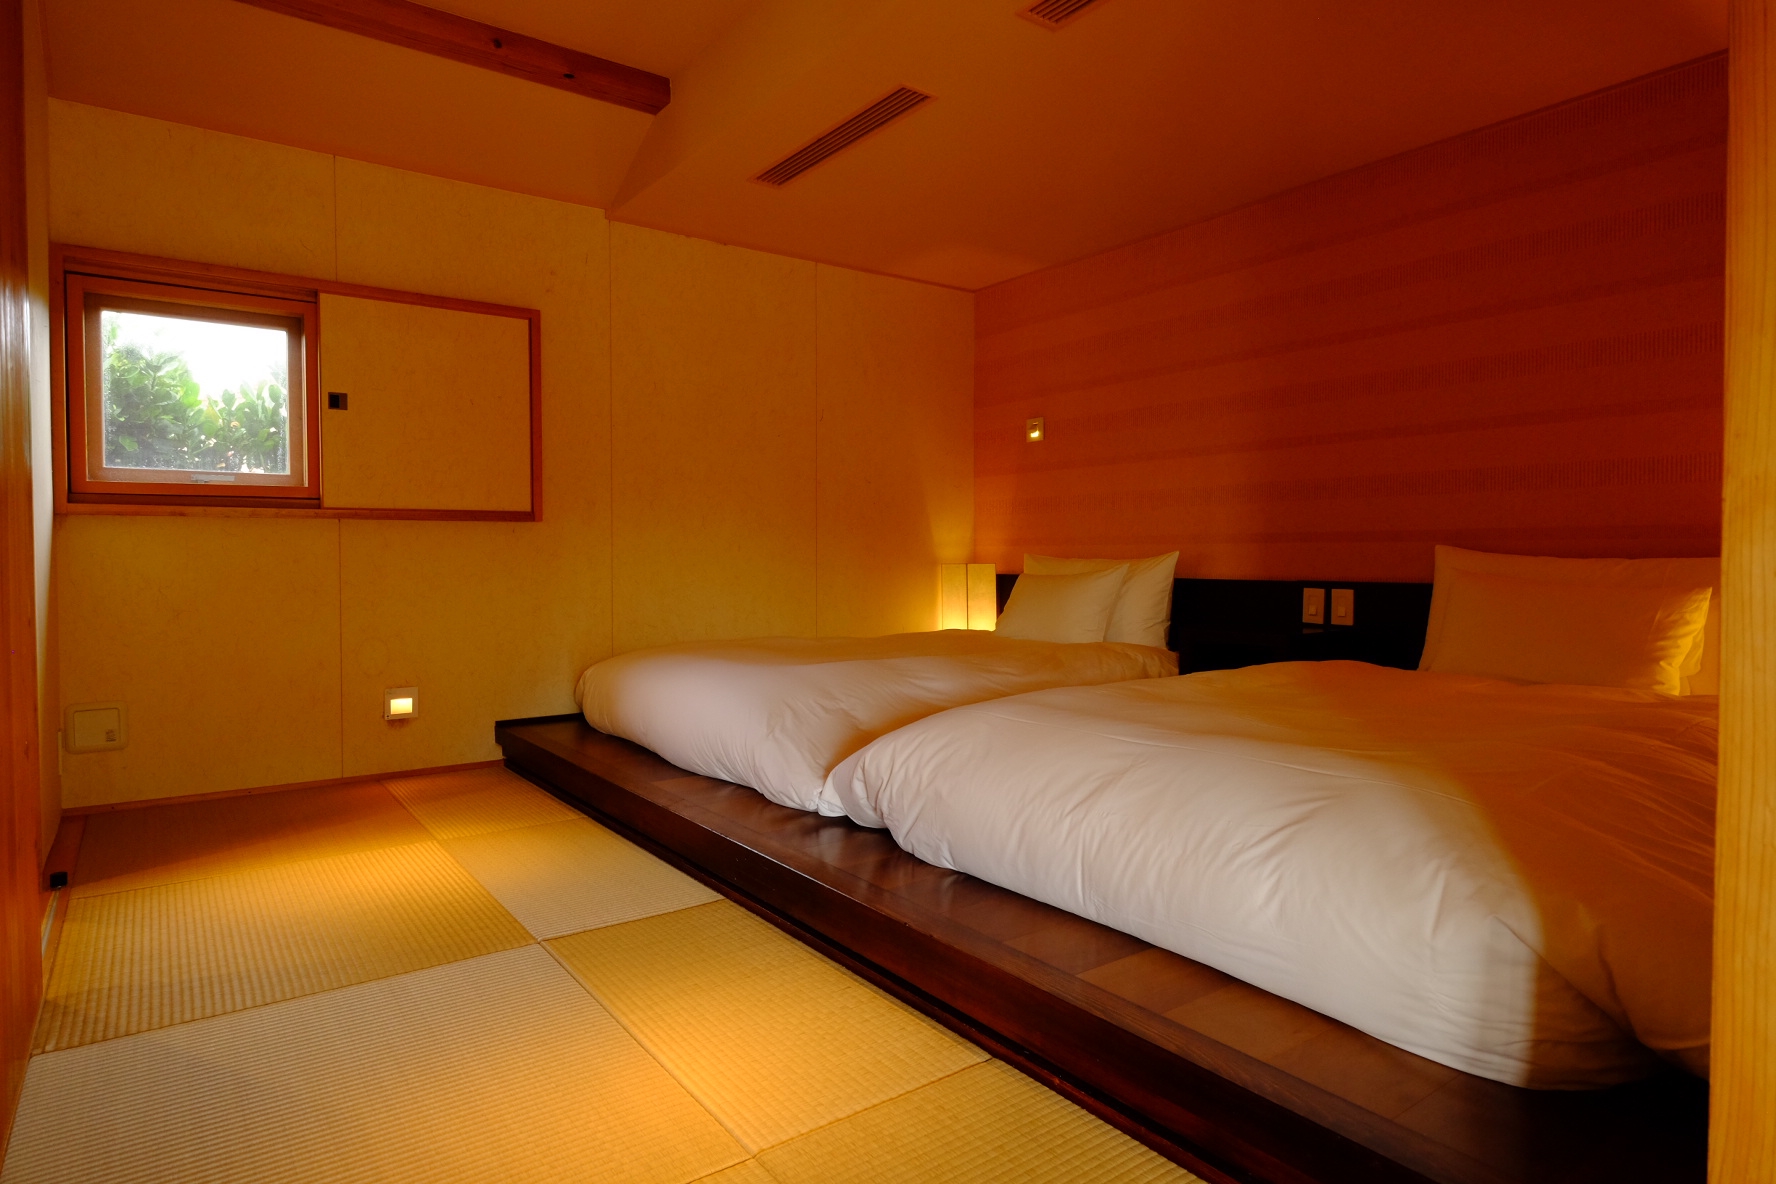 和室にベッドで和モダンな安らぐ寝室に 大阪北摂 風水鑑定士 整理収納士 松元広美